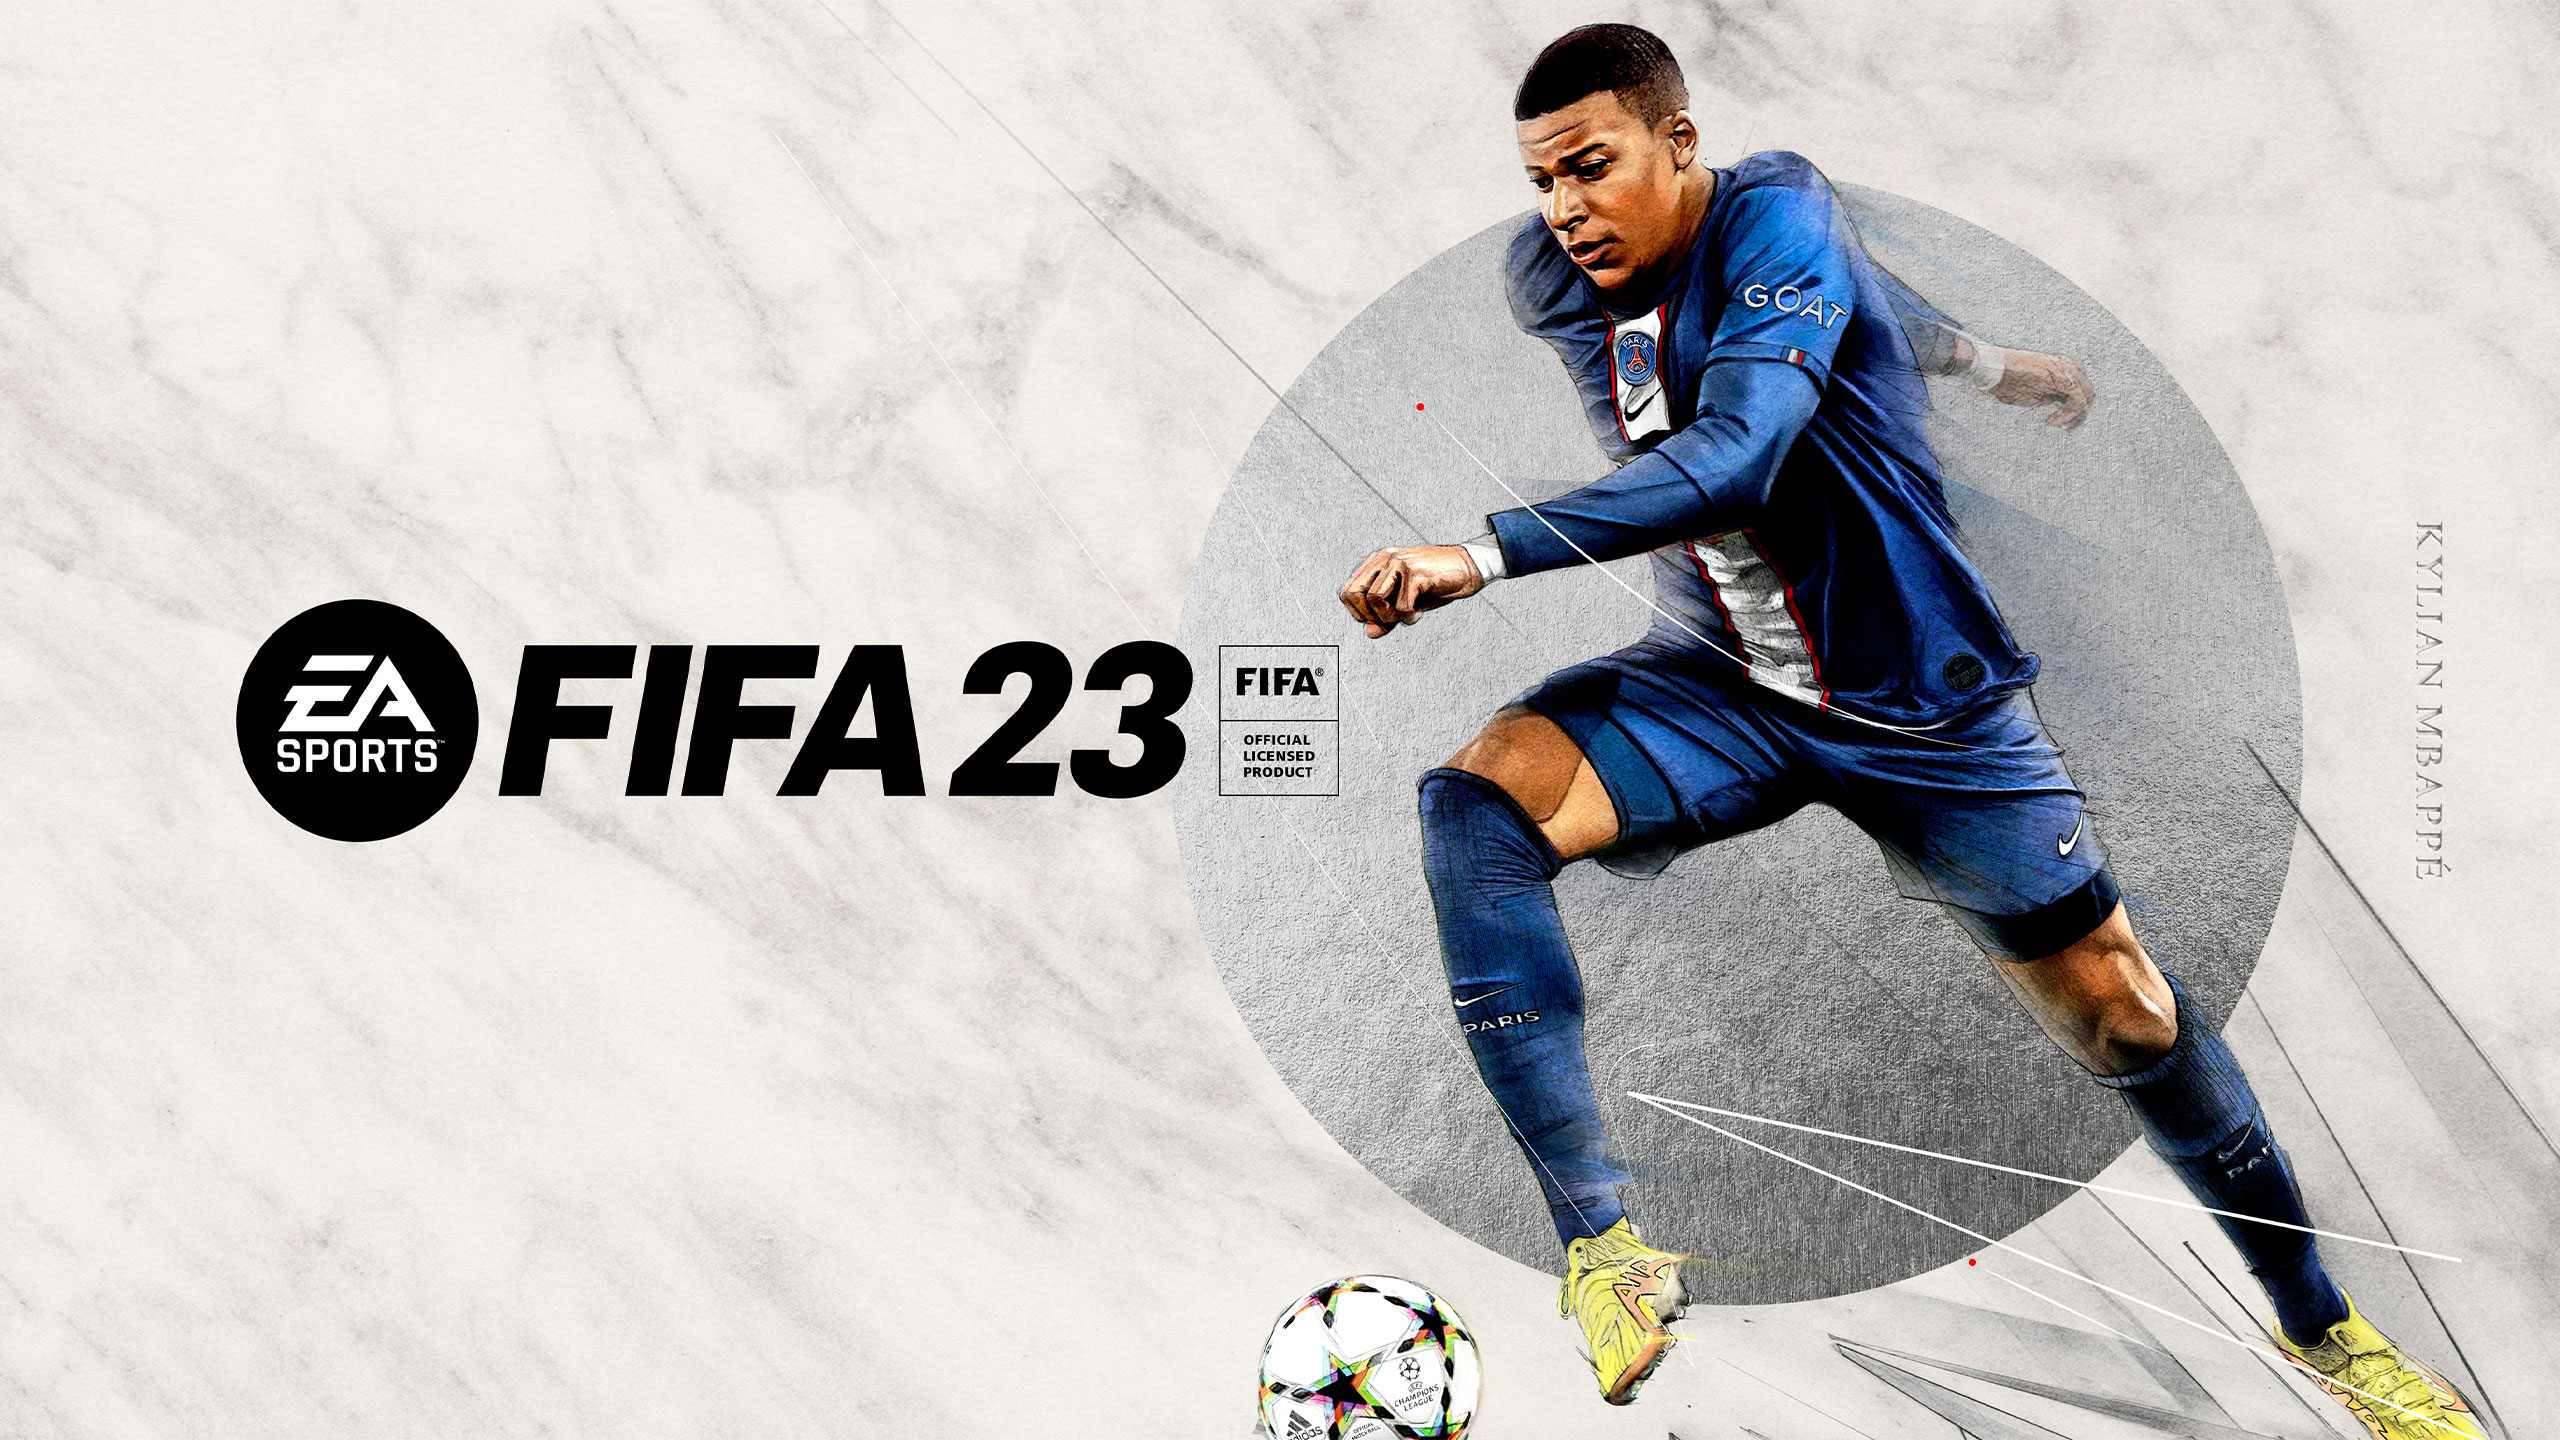 《FIFA23》世界盃模式意外泄露 PS5玩家可訪問但不能玩